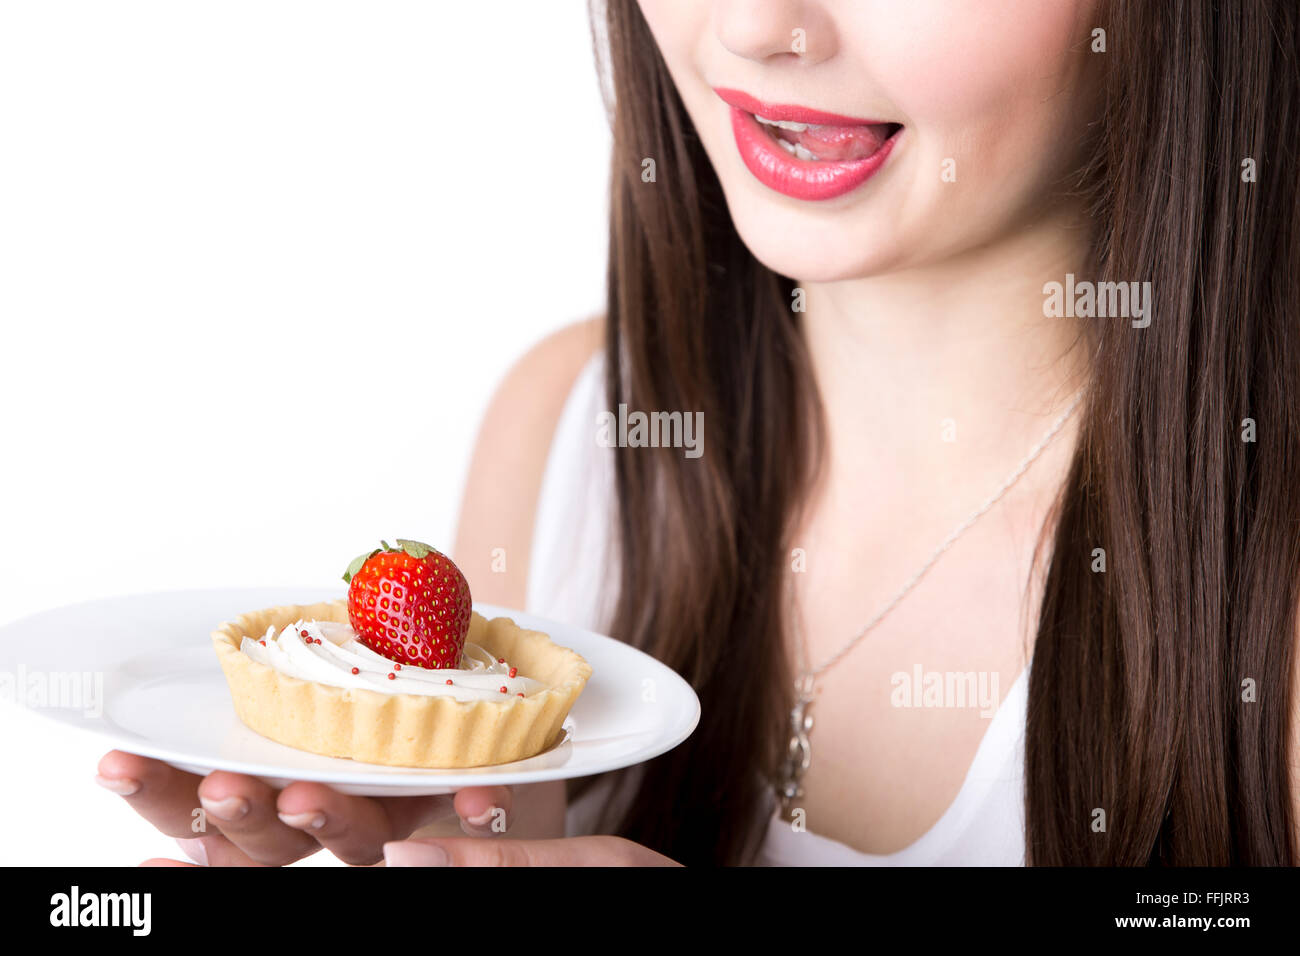 Junge Frau hält in ihrem Hand-Teller mit leckeren Erdbeer Sahne Torte Kuchen, leckte die Lippen versucht, süßes Dessert Essen Stockfoto